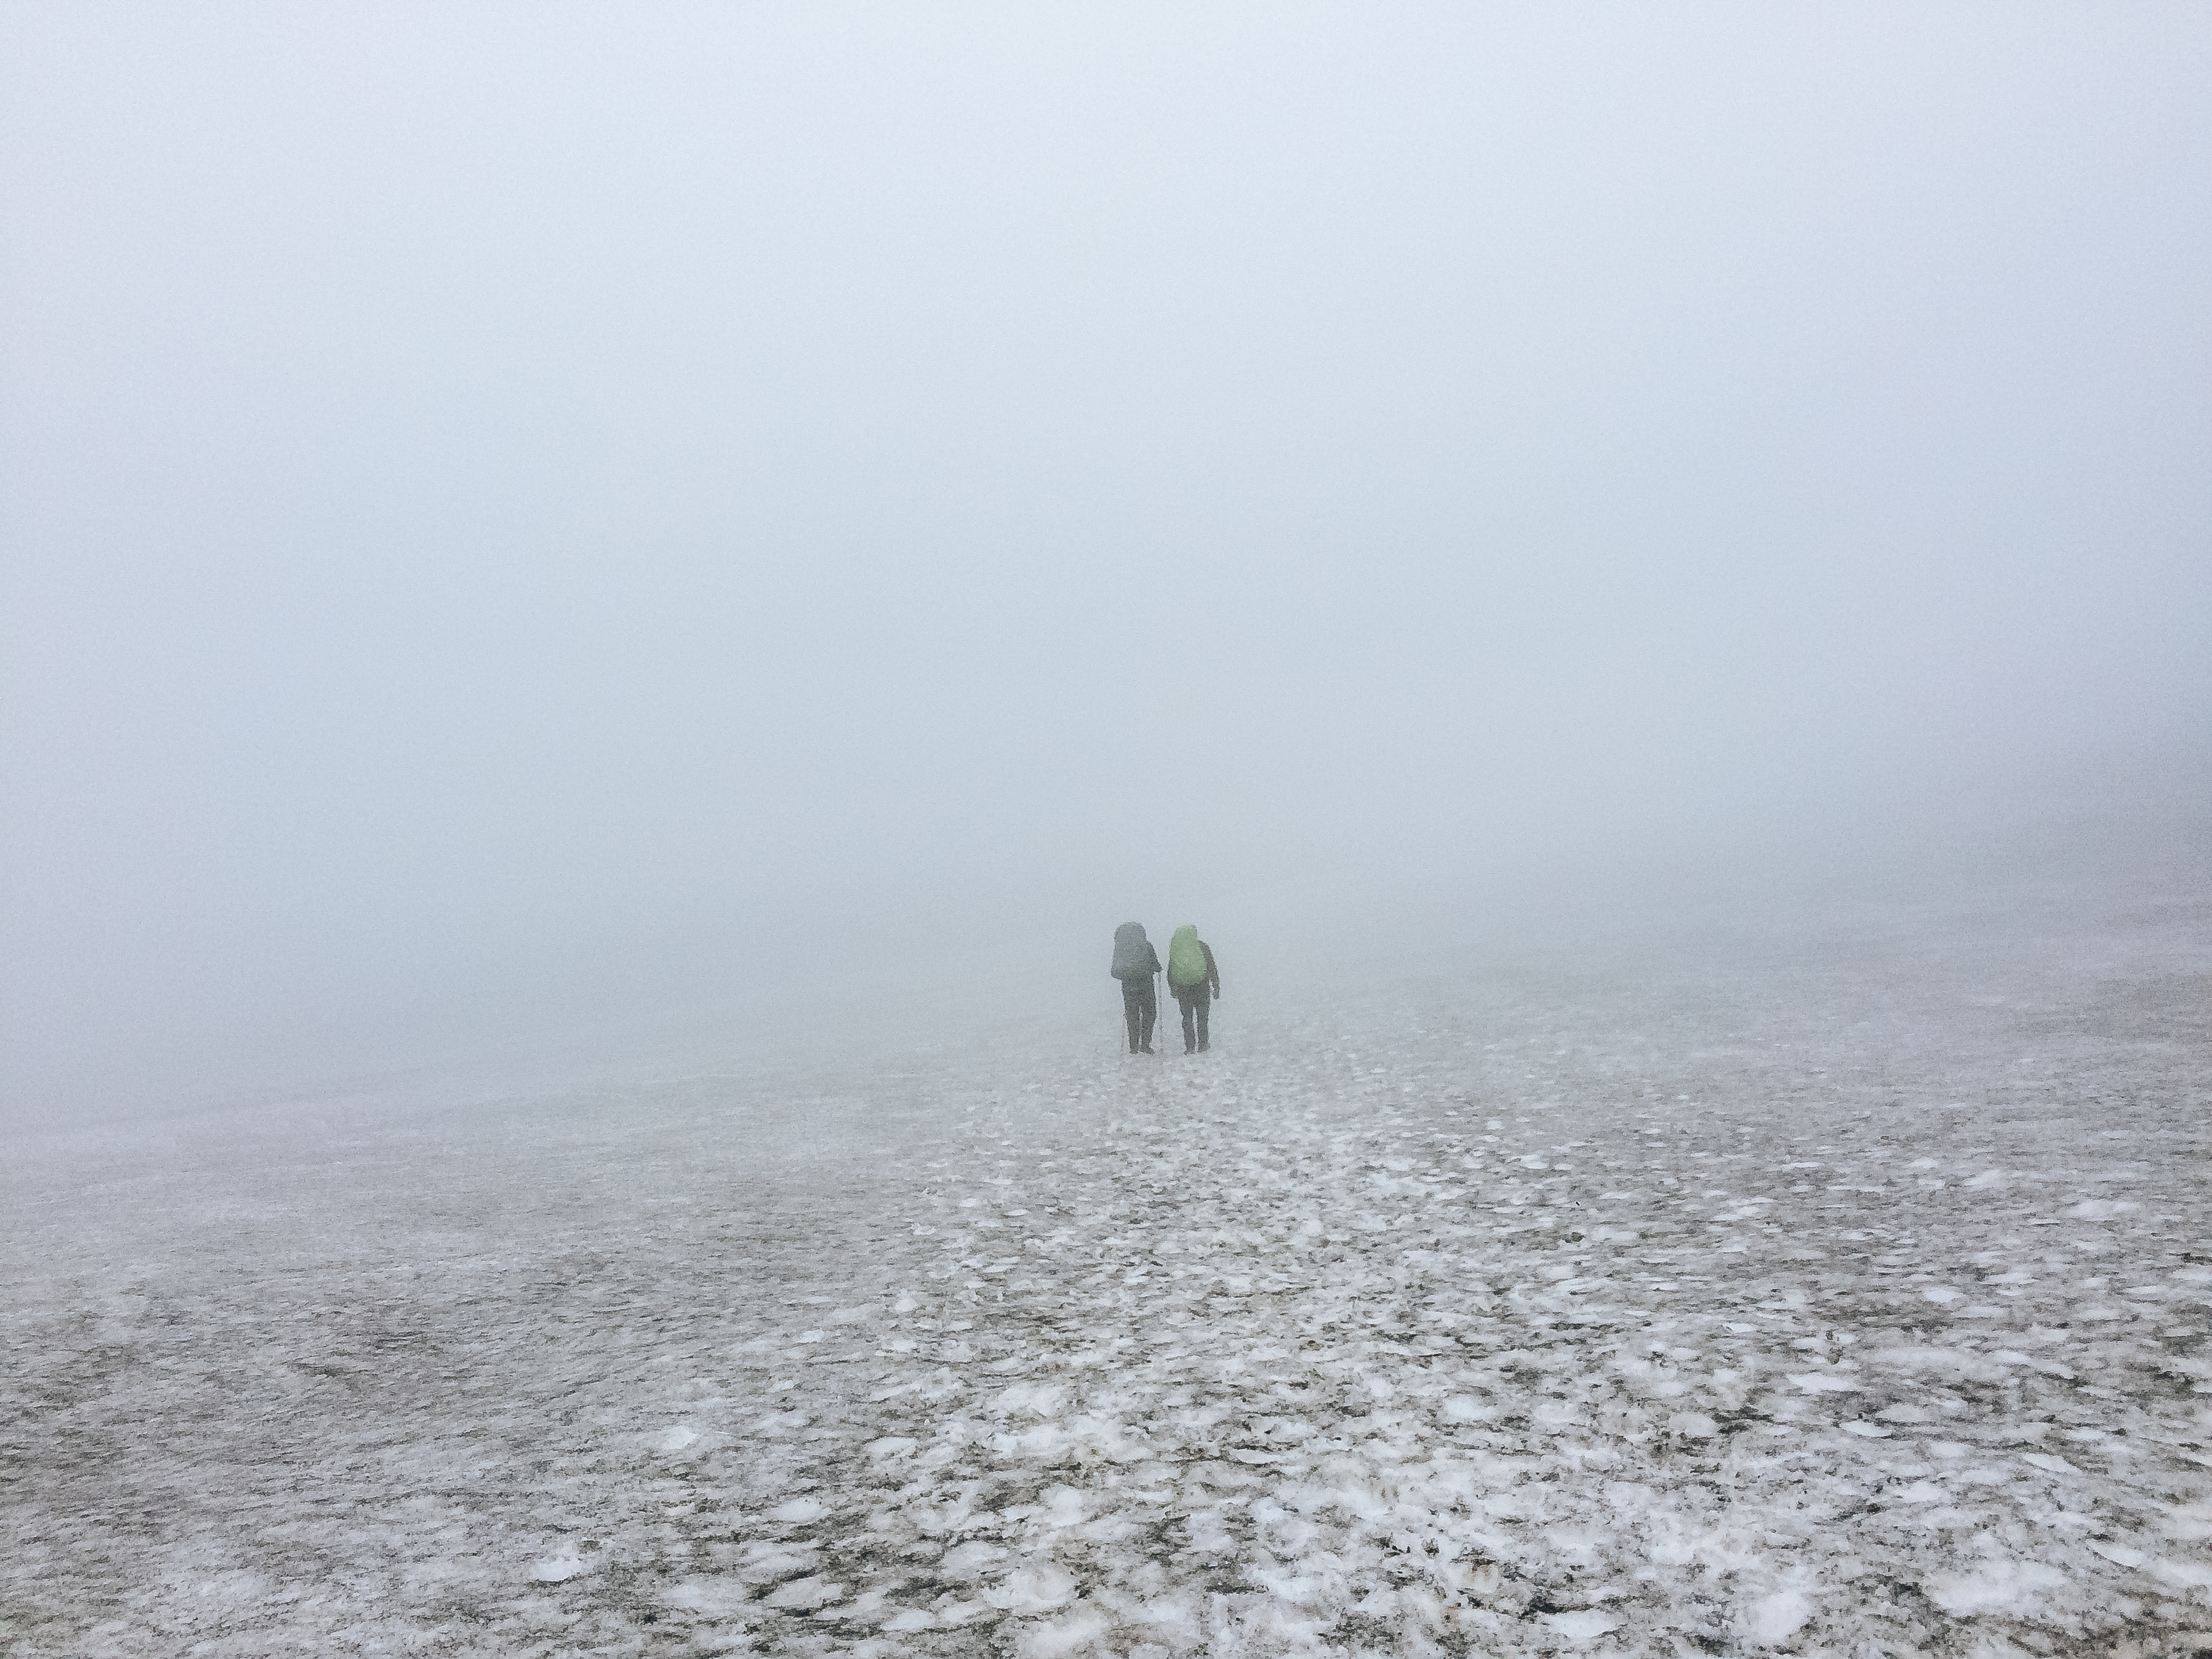 fimmvordurhals hike thorsmork iceland-17